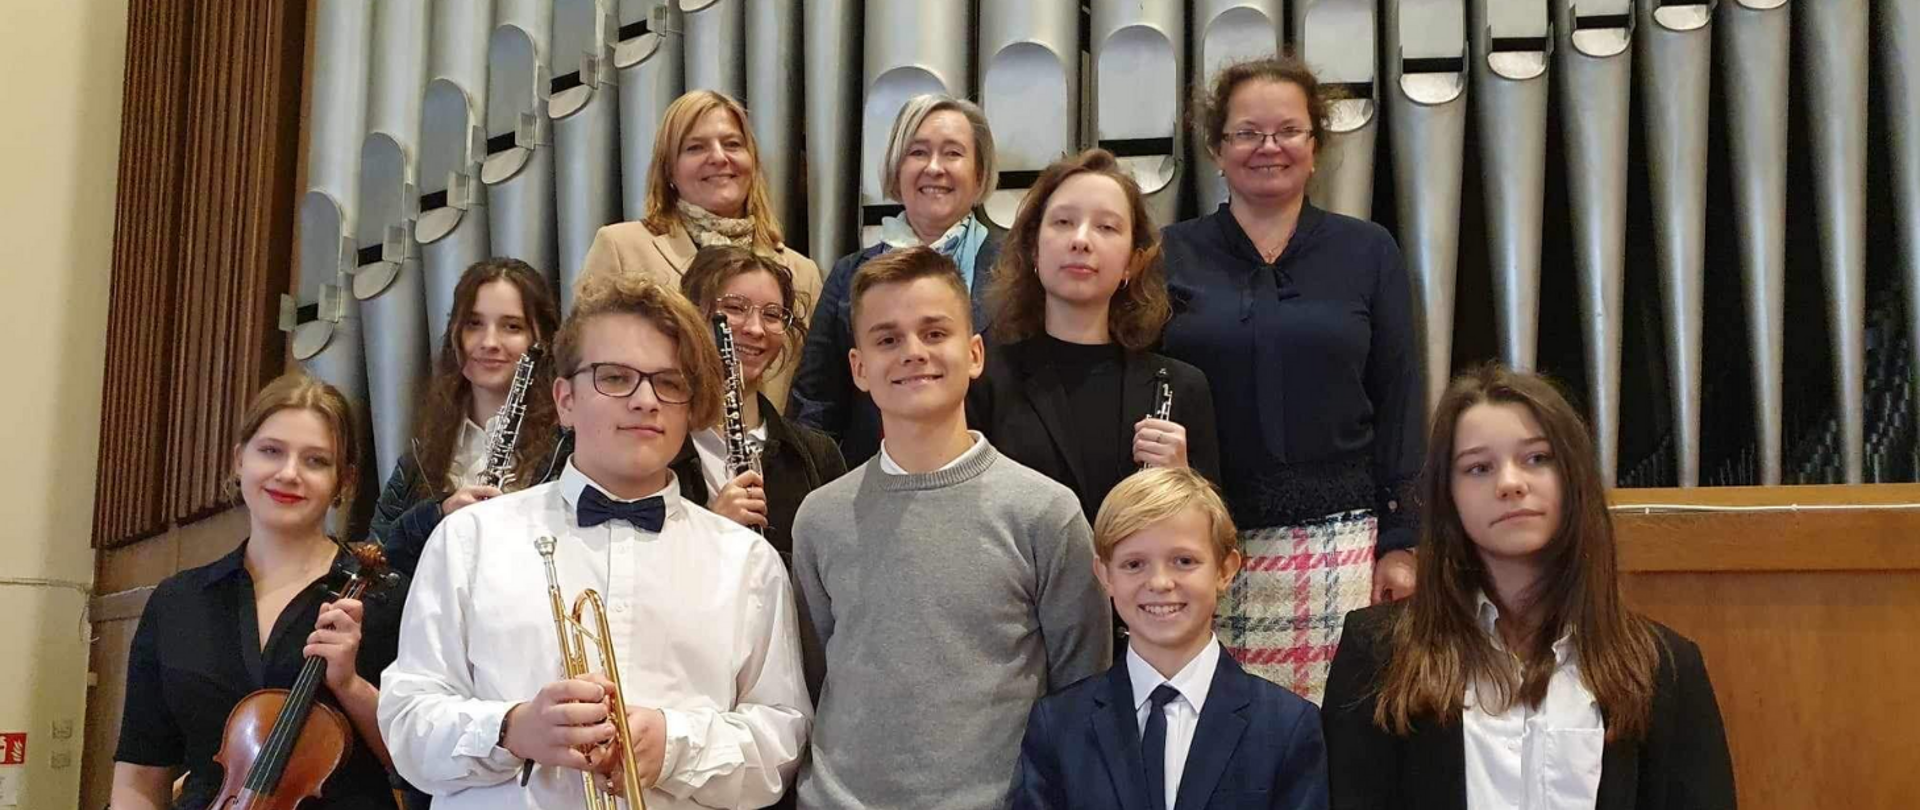 Na zdjęciu grupa uśmiechniętej młodzieży. Wszyscy odświętnie ubrani. Niektórzy trzymają instrumenty muzyczne: skrzypce, trąbkę, klarnet. W tle piszczałki organowe.